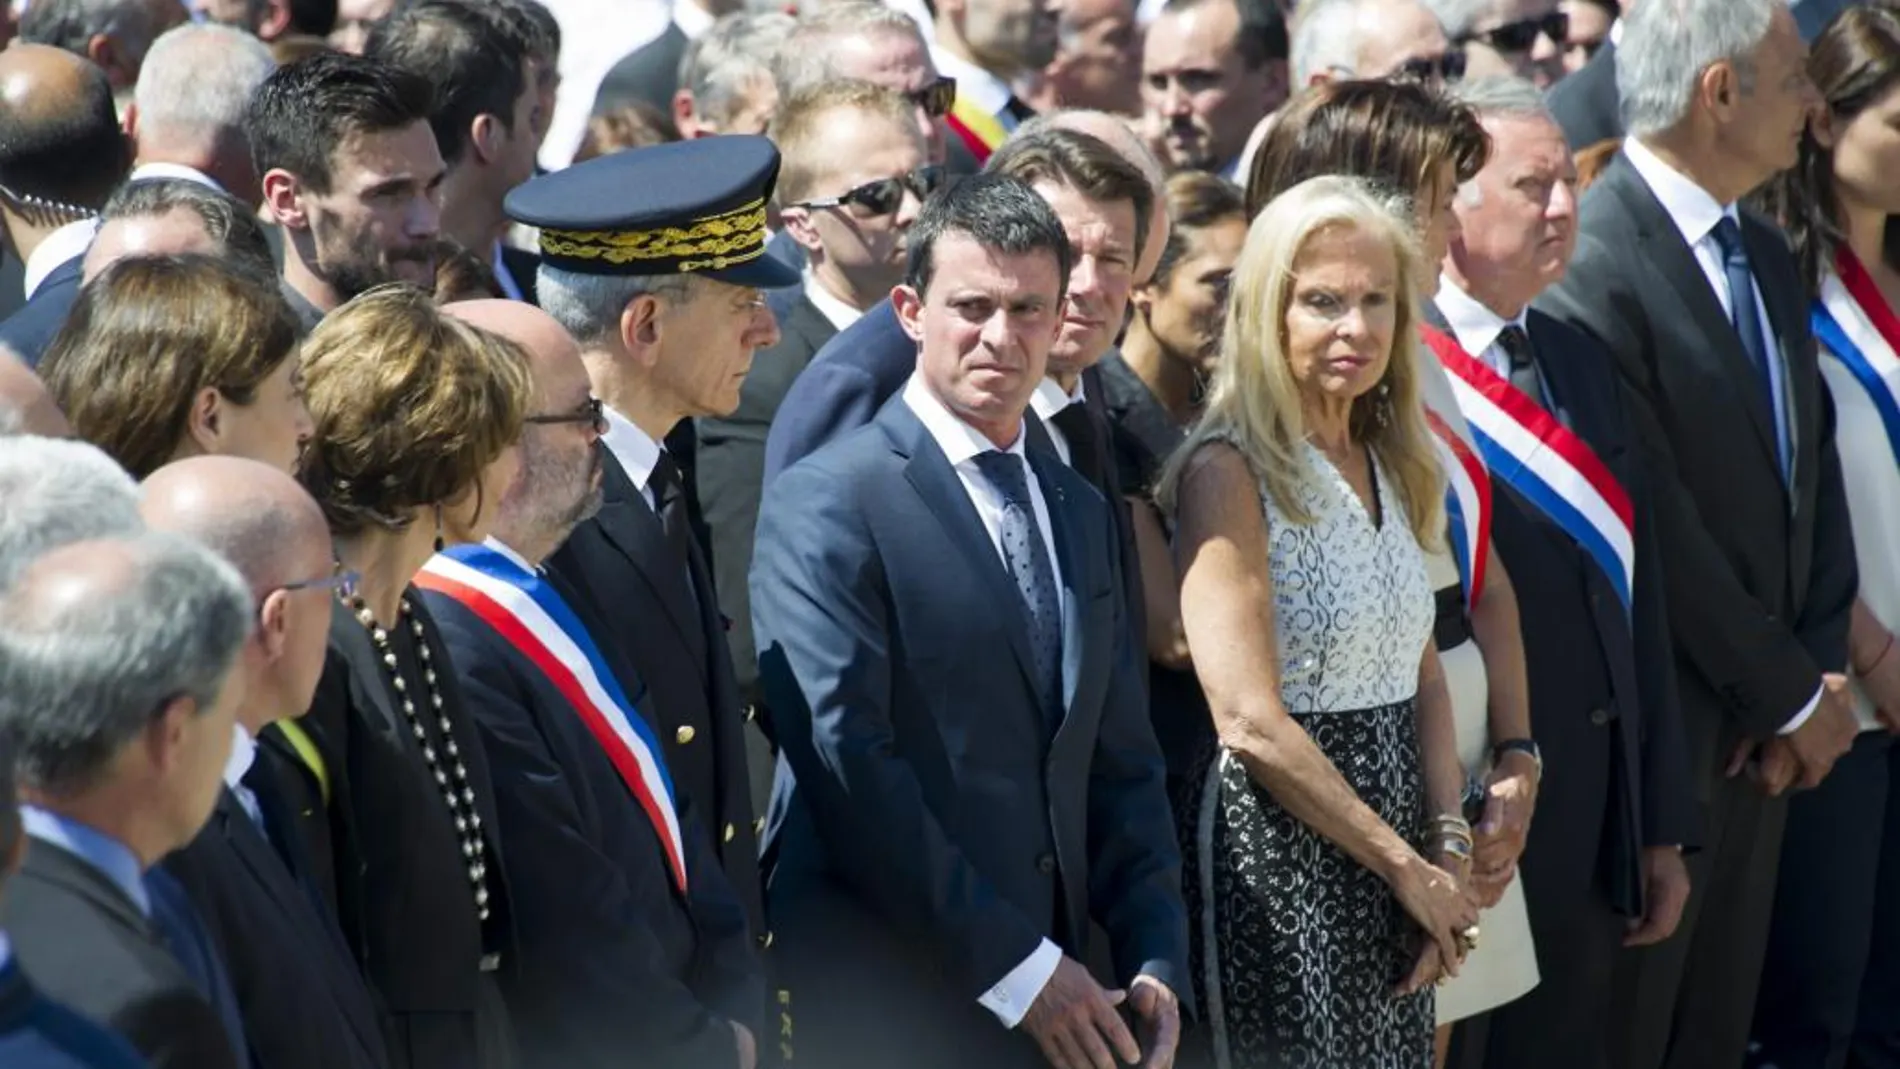 El primer ministro galo, Manuel Valls, guarda un minuto de silencio en honor de las víctimas del ataque